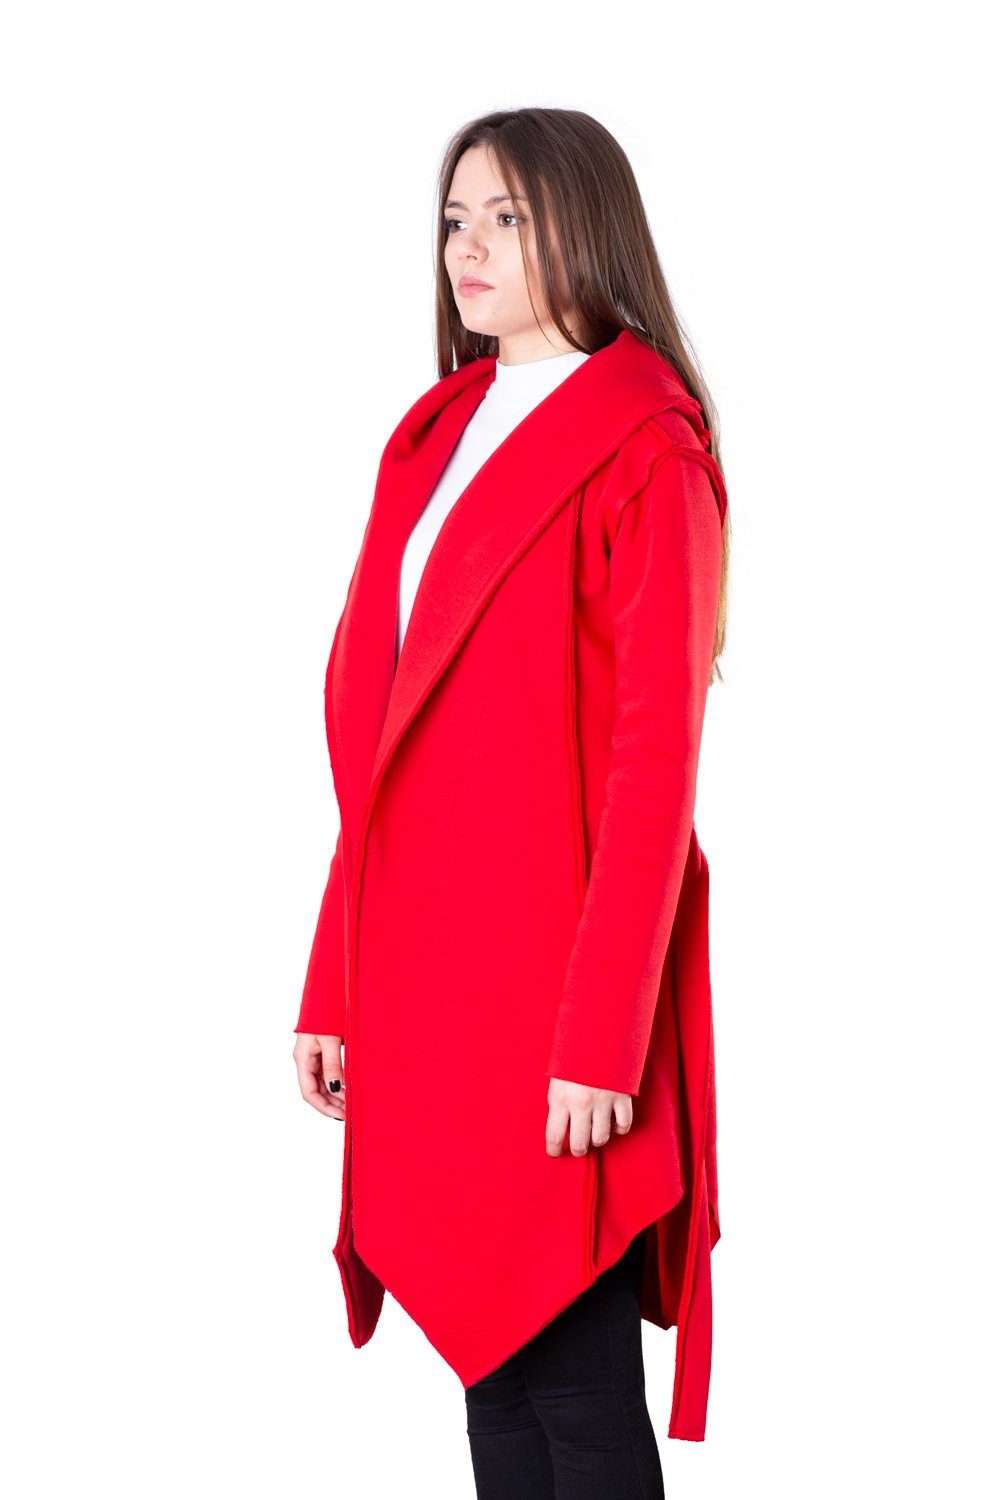 TheG Woman Designer Cardigan 2.0 // červená